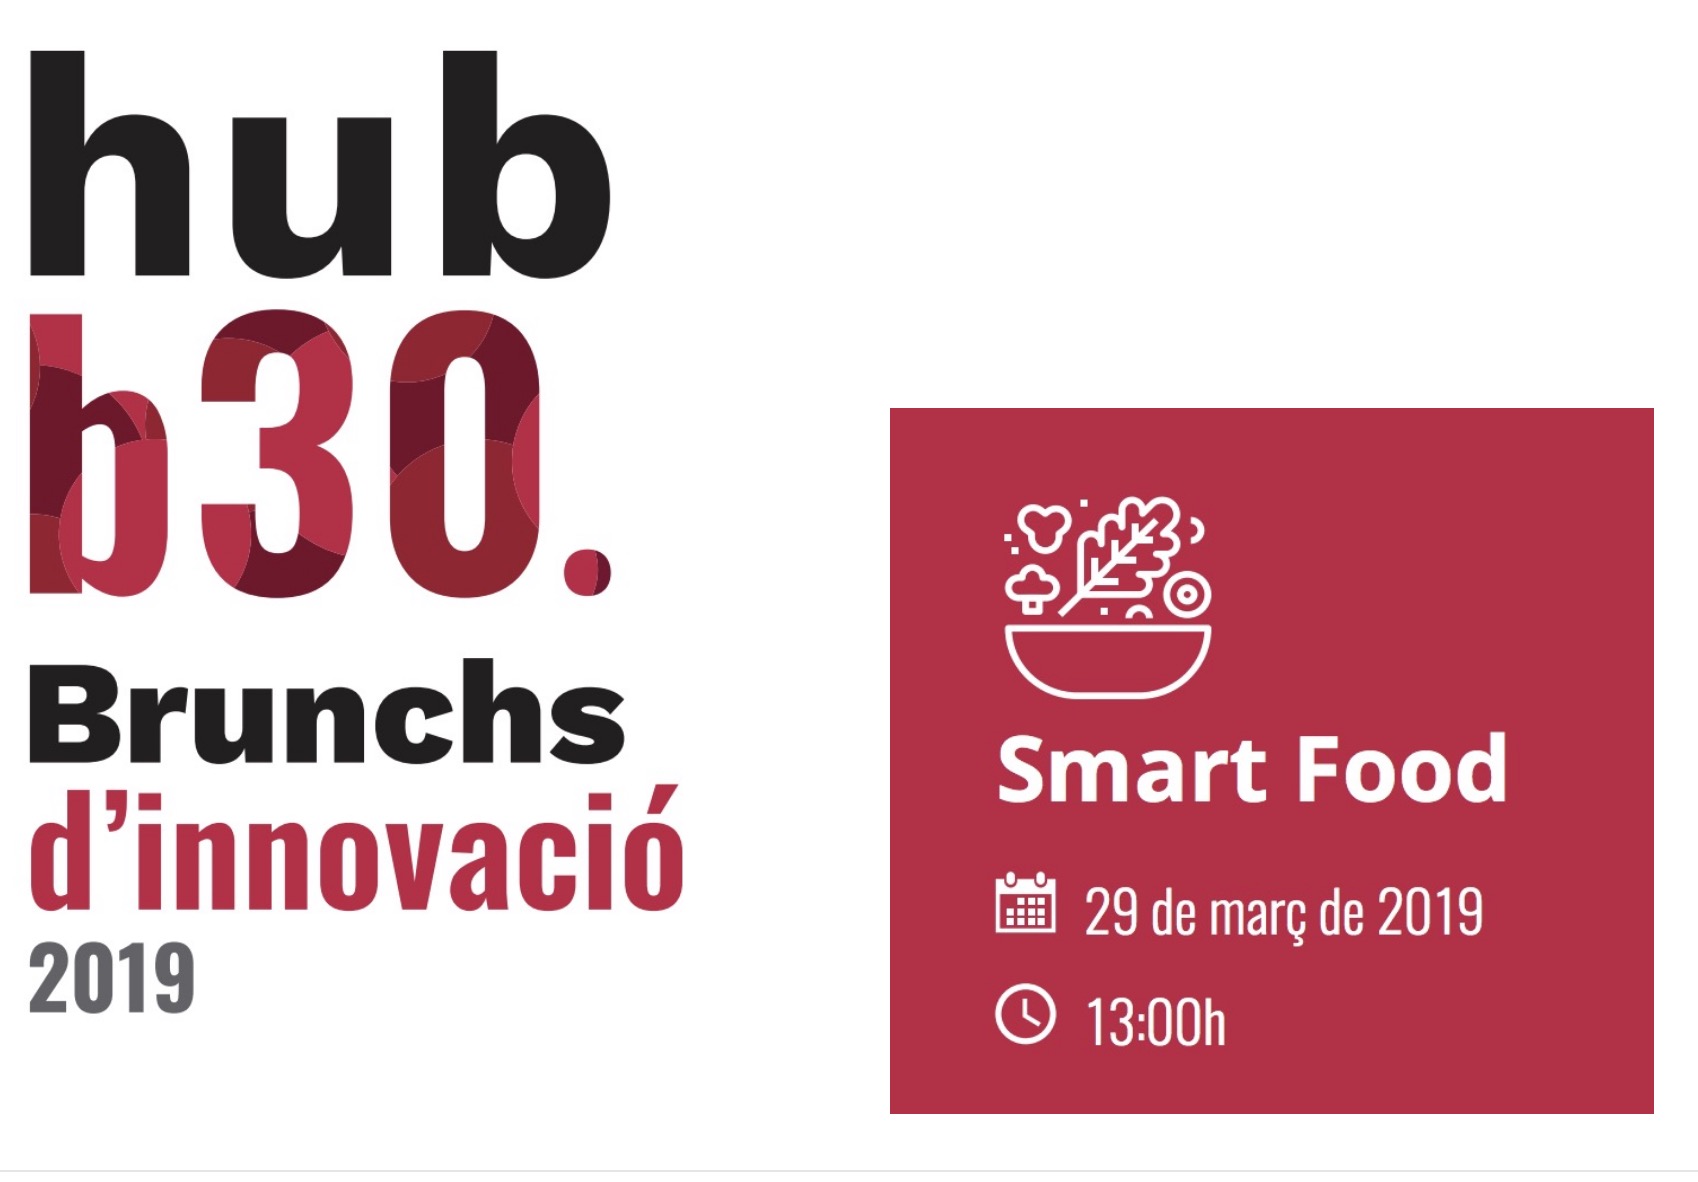 Hub B30 Brunchs d’innovació, Smart Food. 29 de març ( Parc de Recerca UAB )